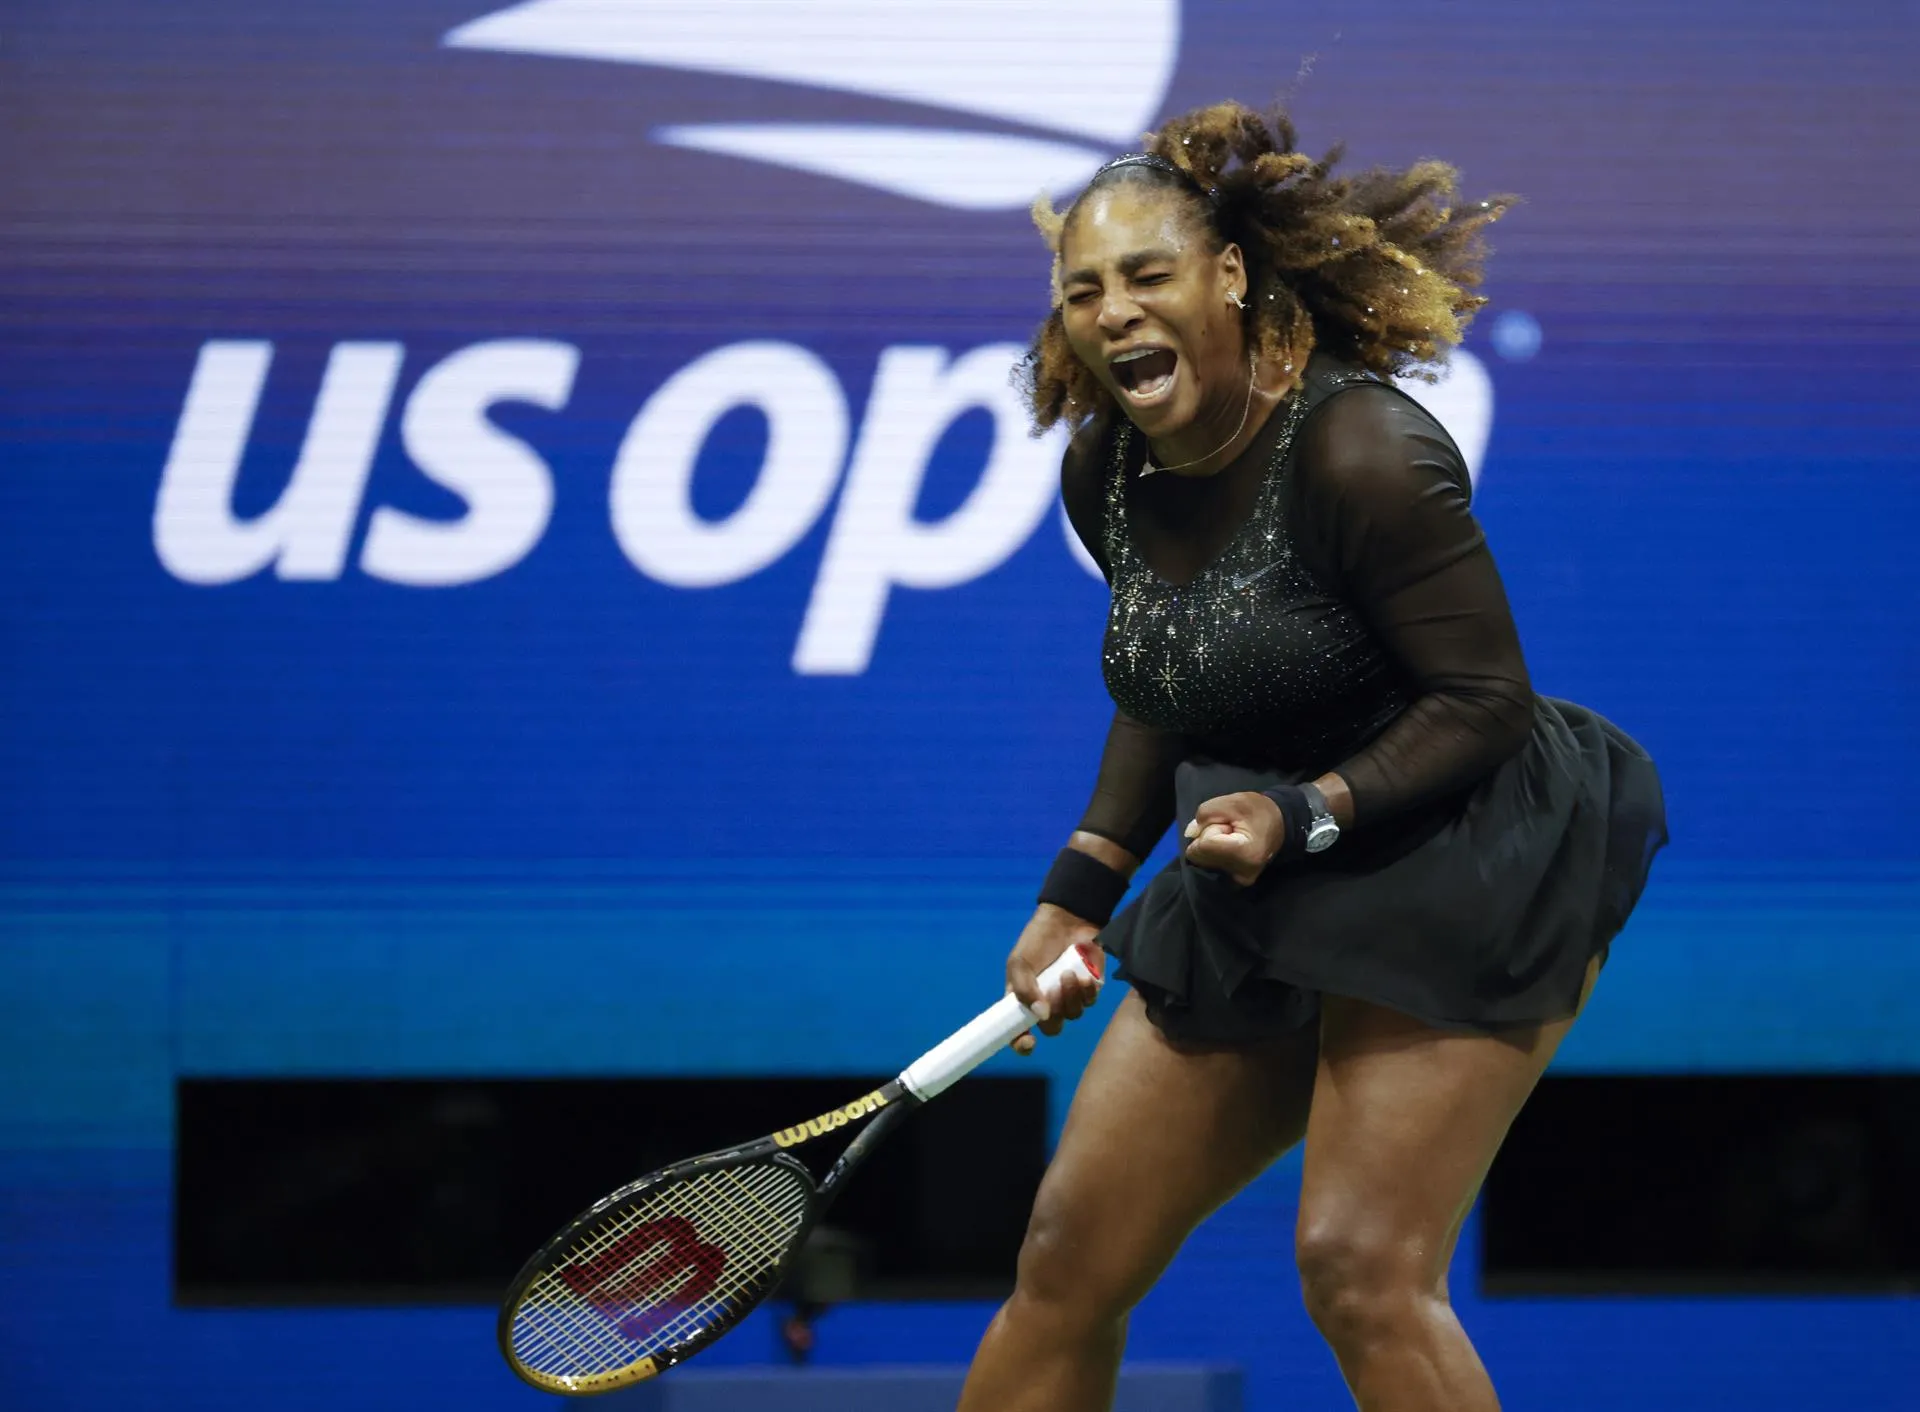 Serena no se pone límites. Ganó otra vez en US Open